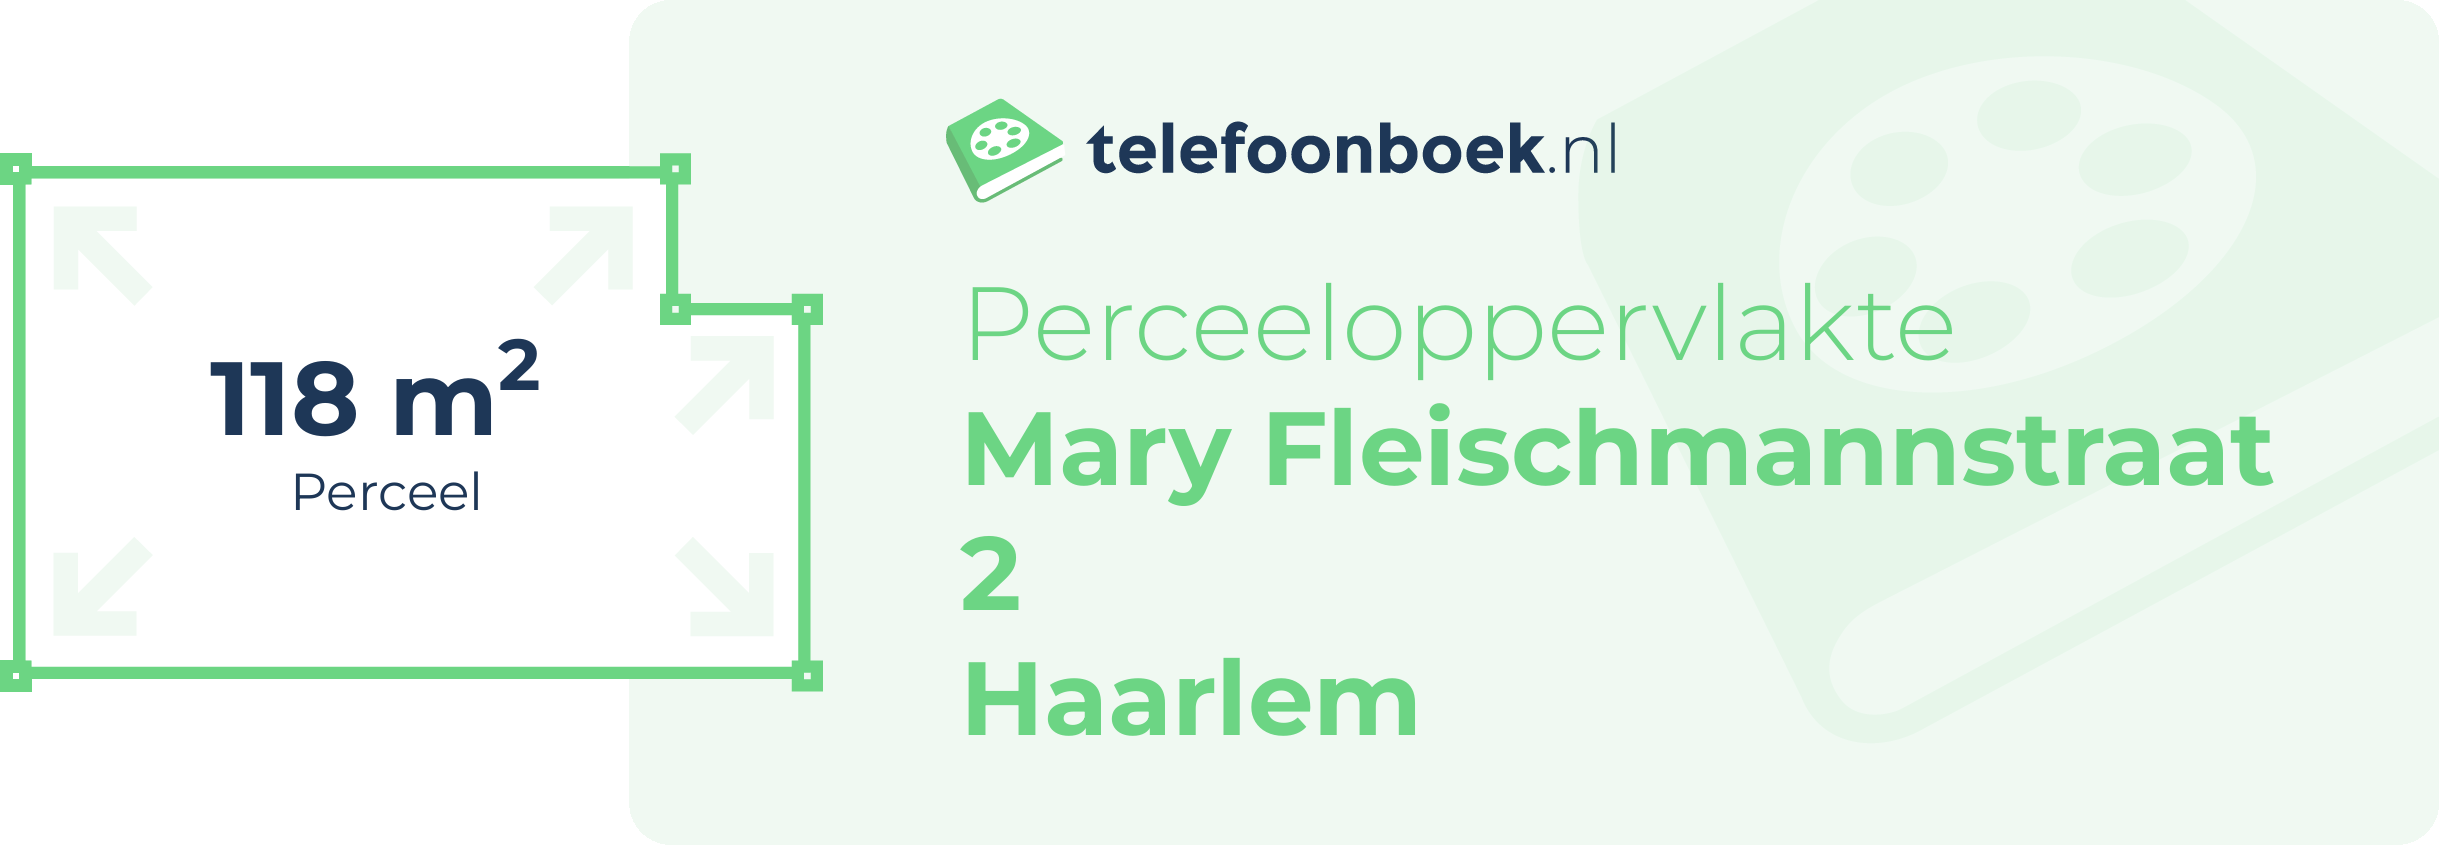 Perceeloppervlakte Mary Fleischmannstraat 2 Haarlem